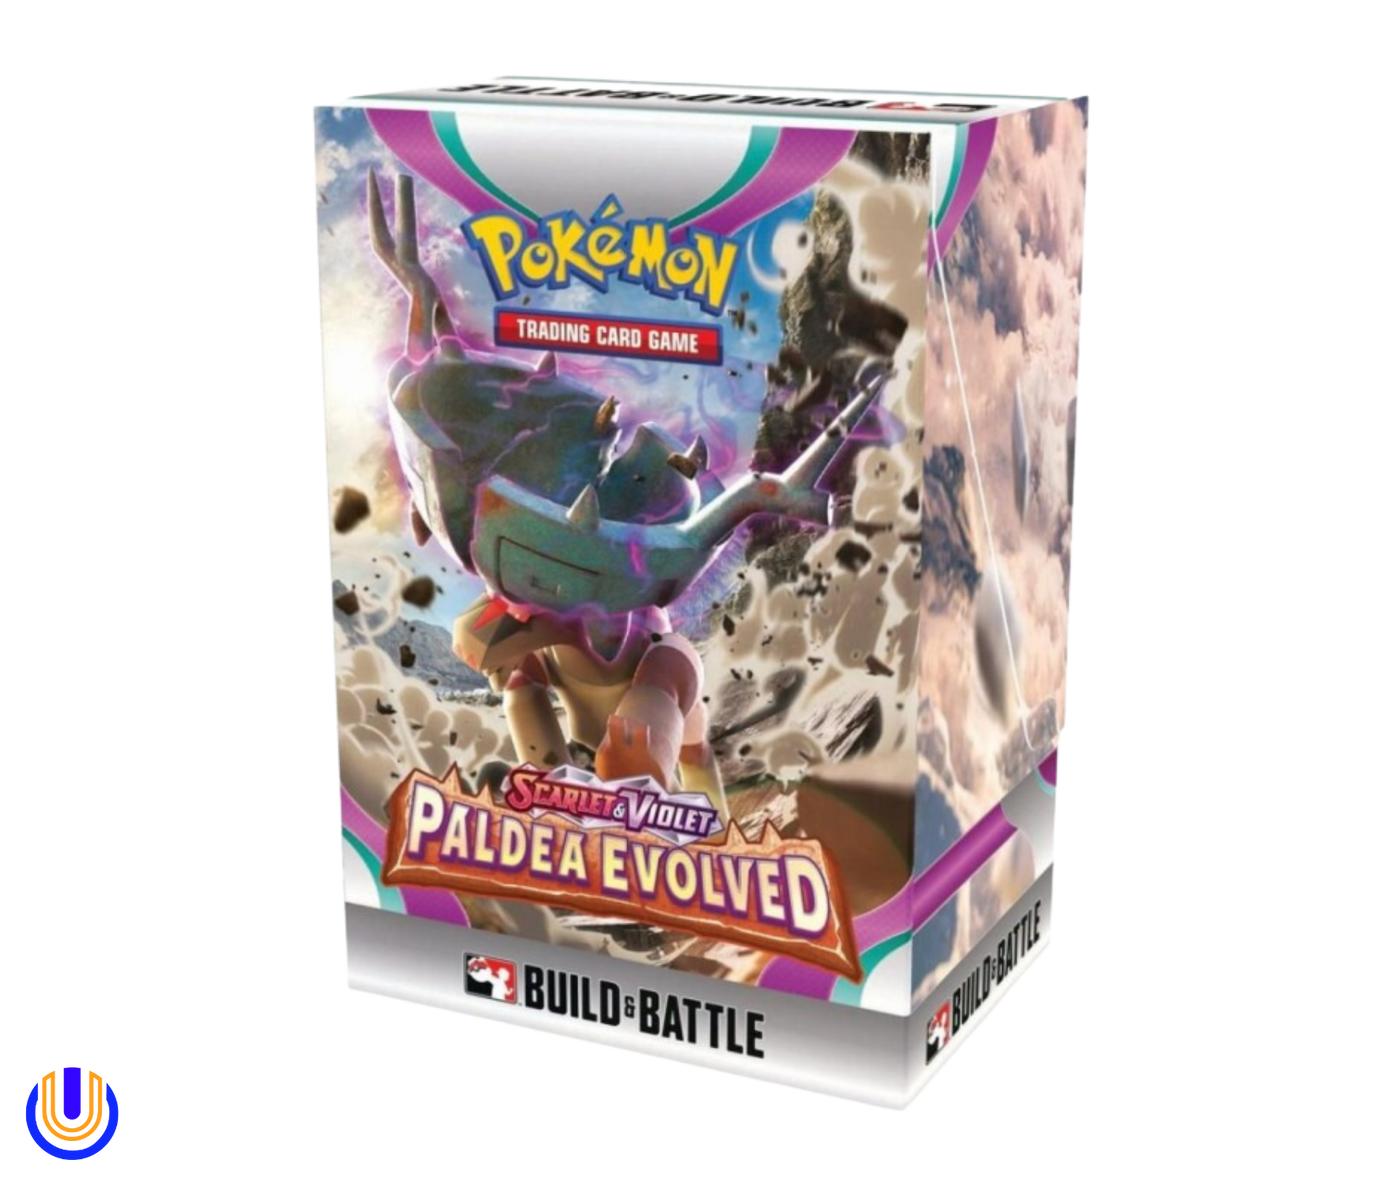 Pokémon TCG: Scarlet & Violet SV02 Build & Battle Box